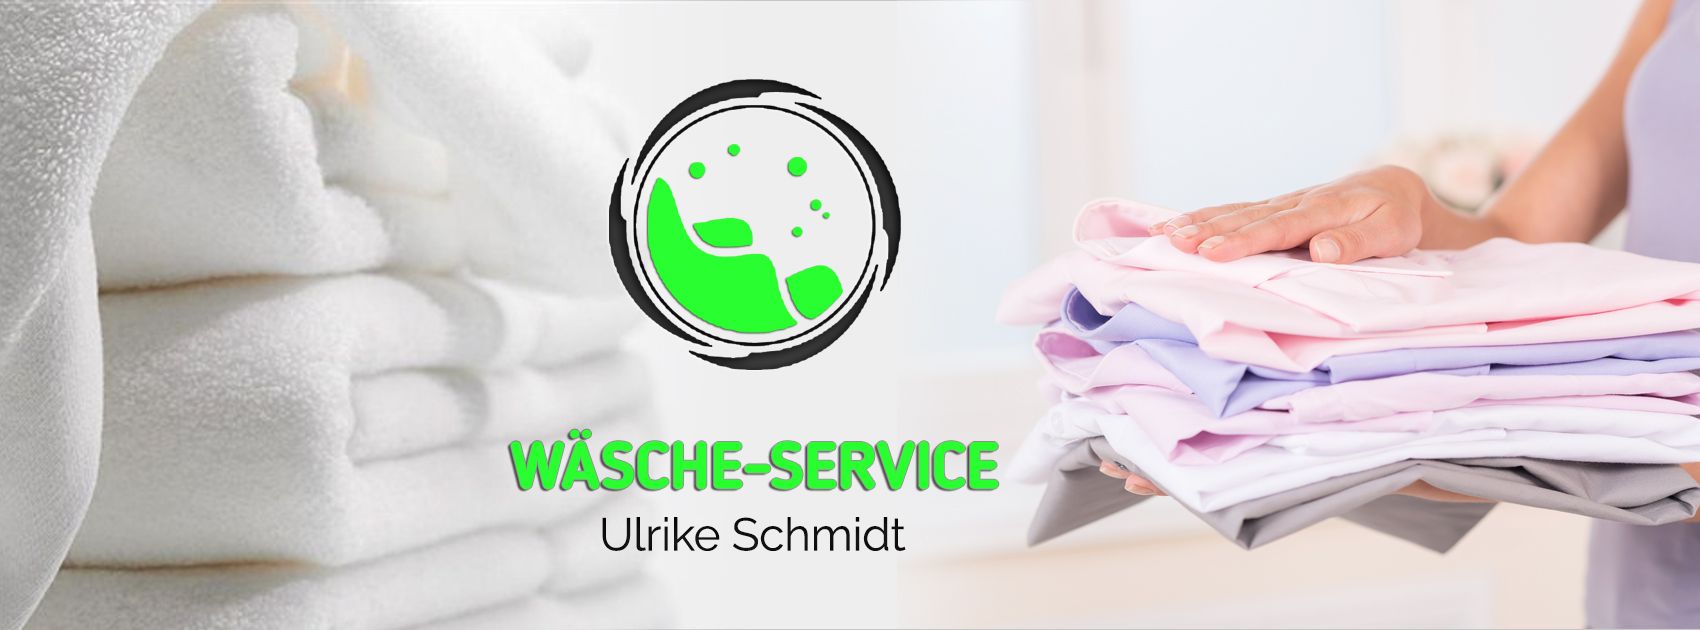 Schlüsseldienst | Wäsche-Service Ulrike Schmidt